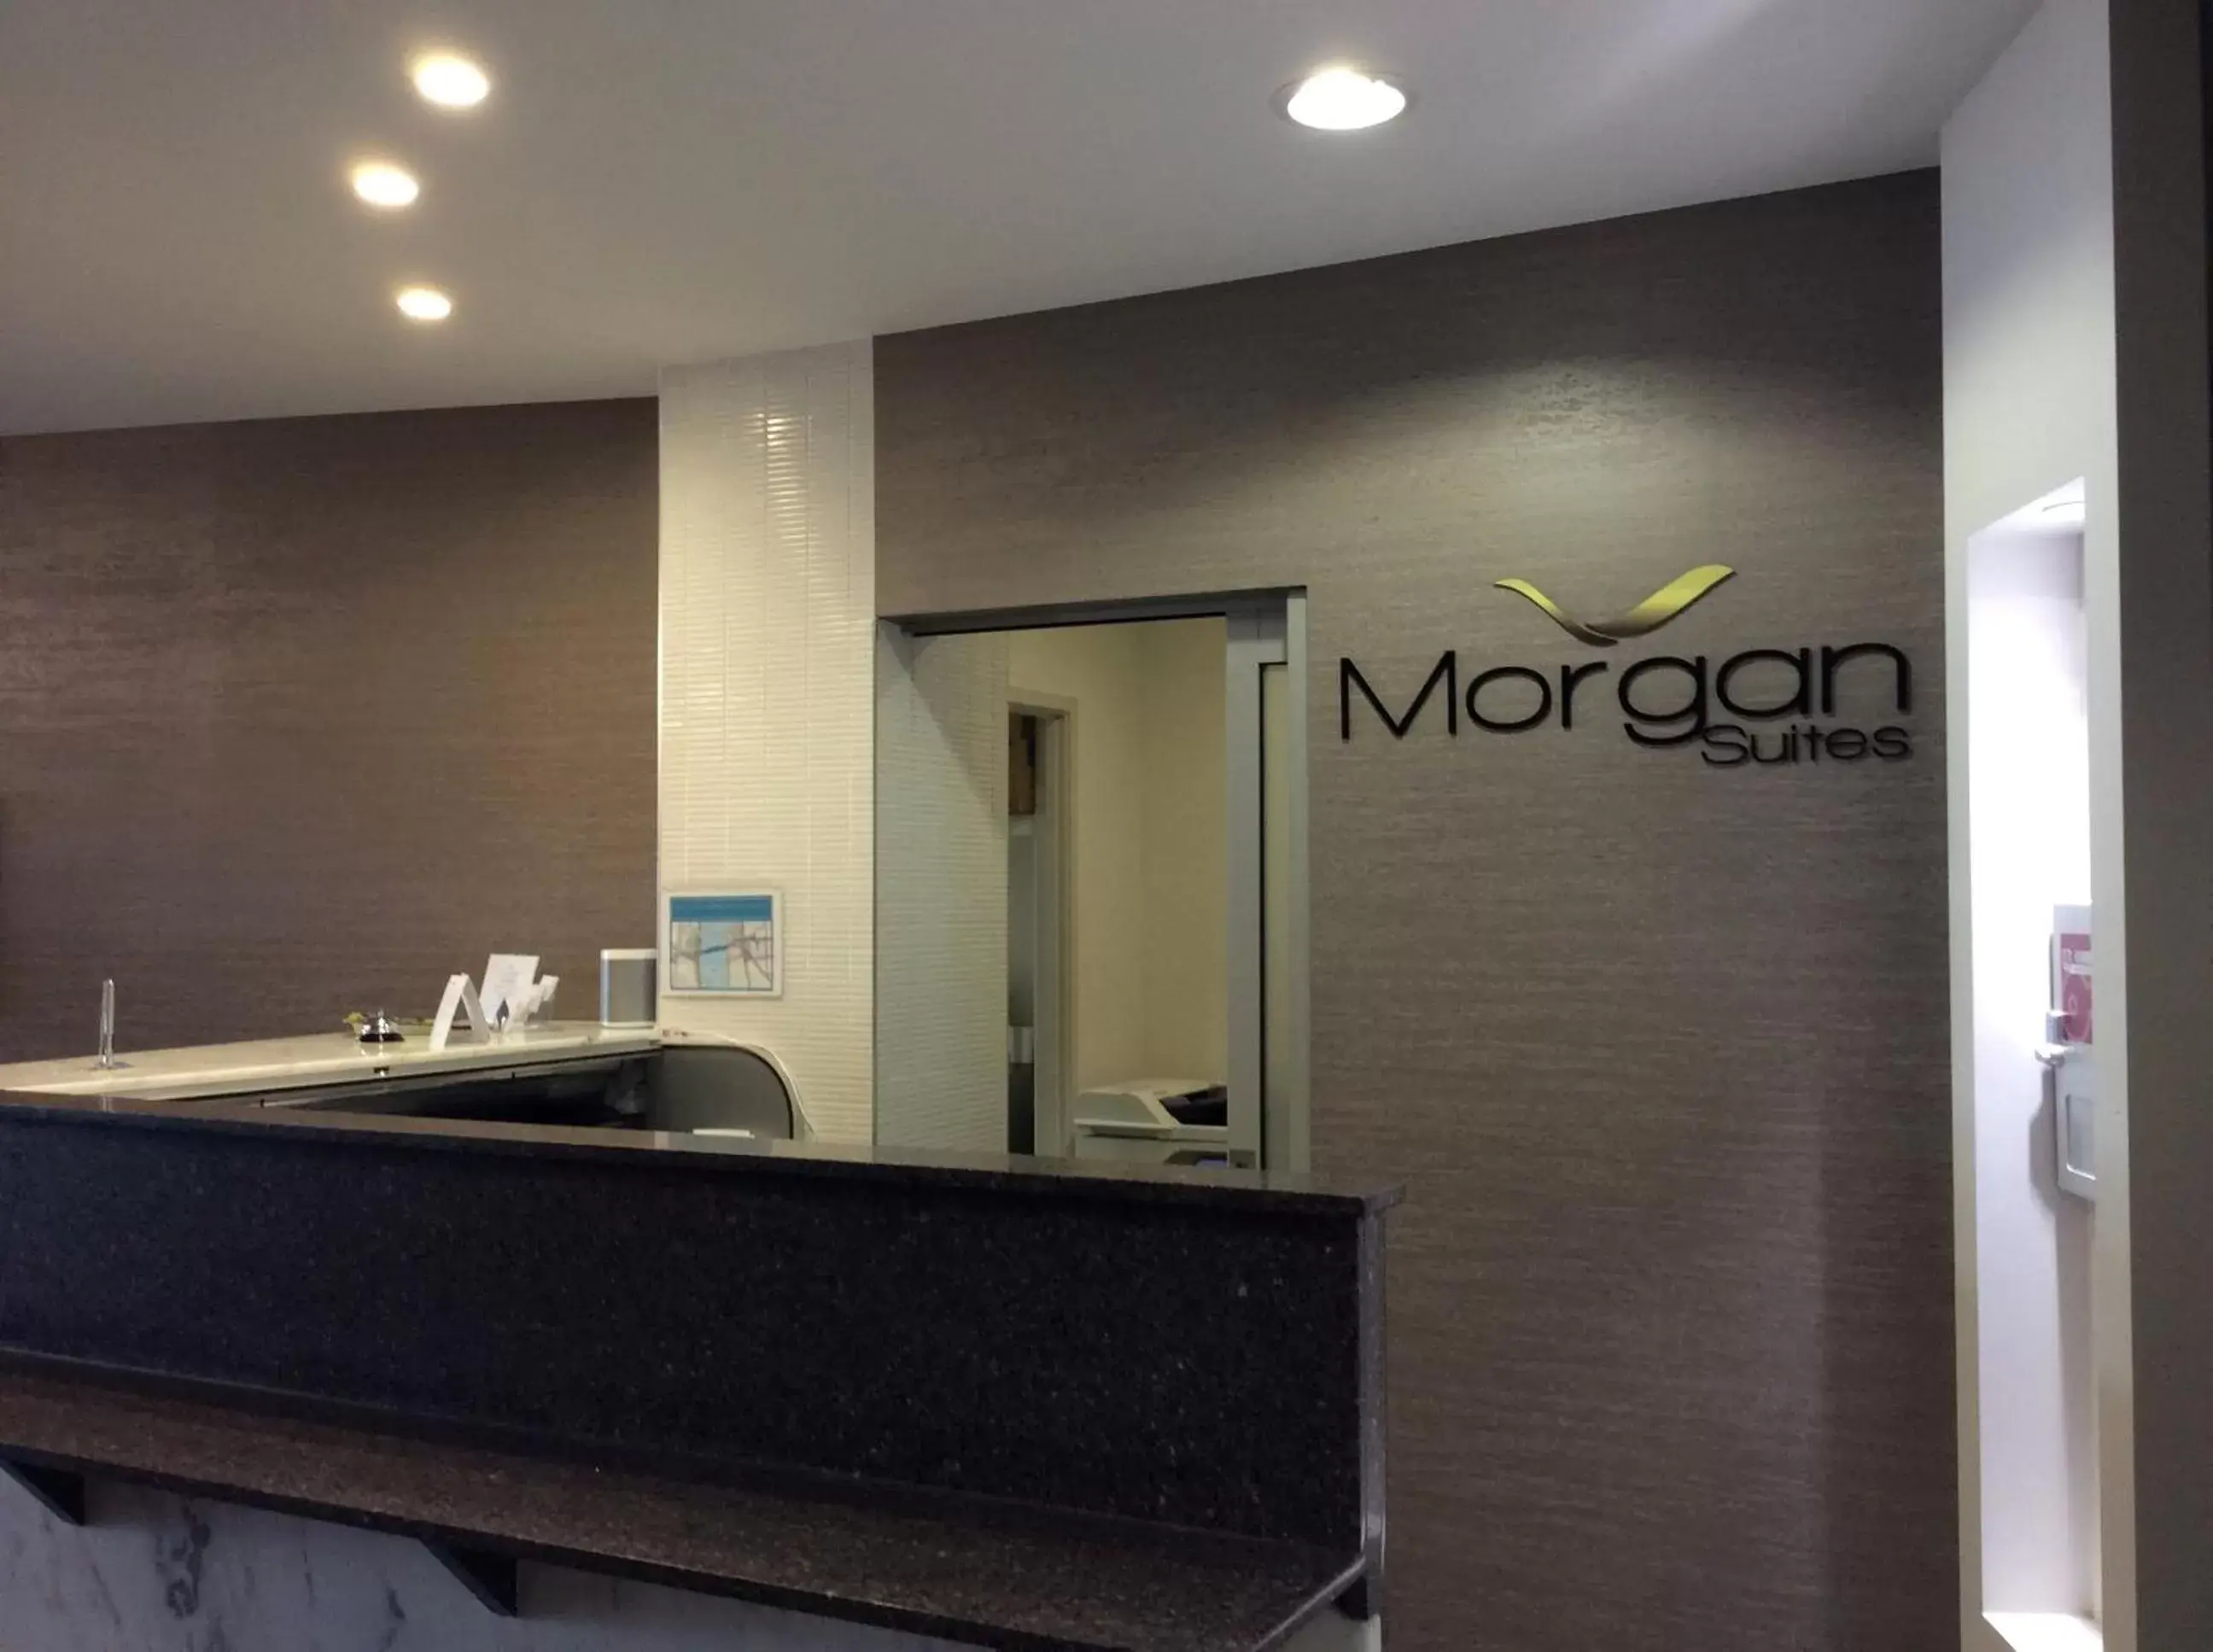 Lobby or reception, Lobby/Reception in Morgan Suites